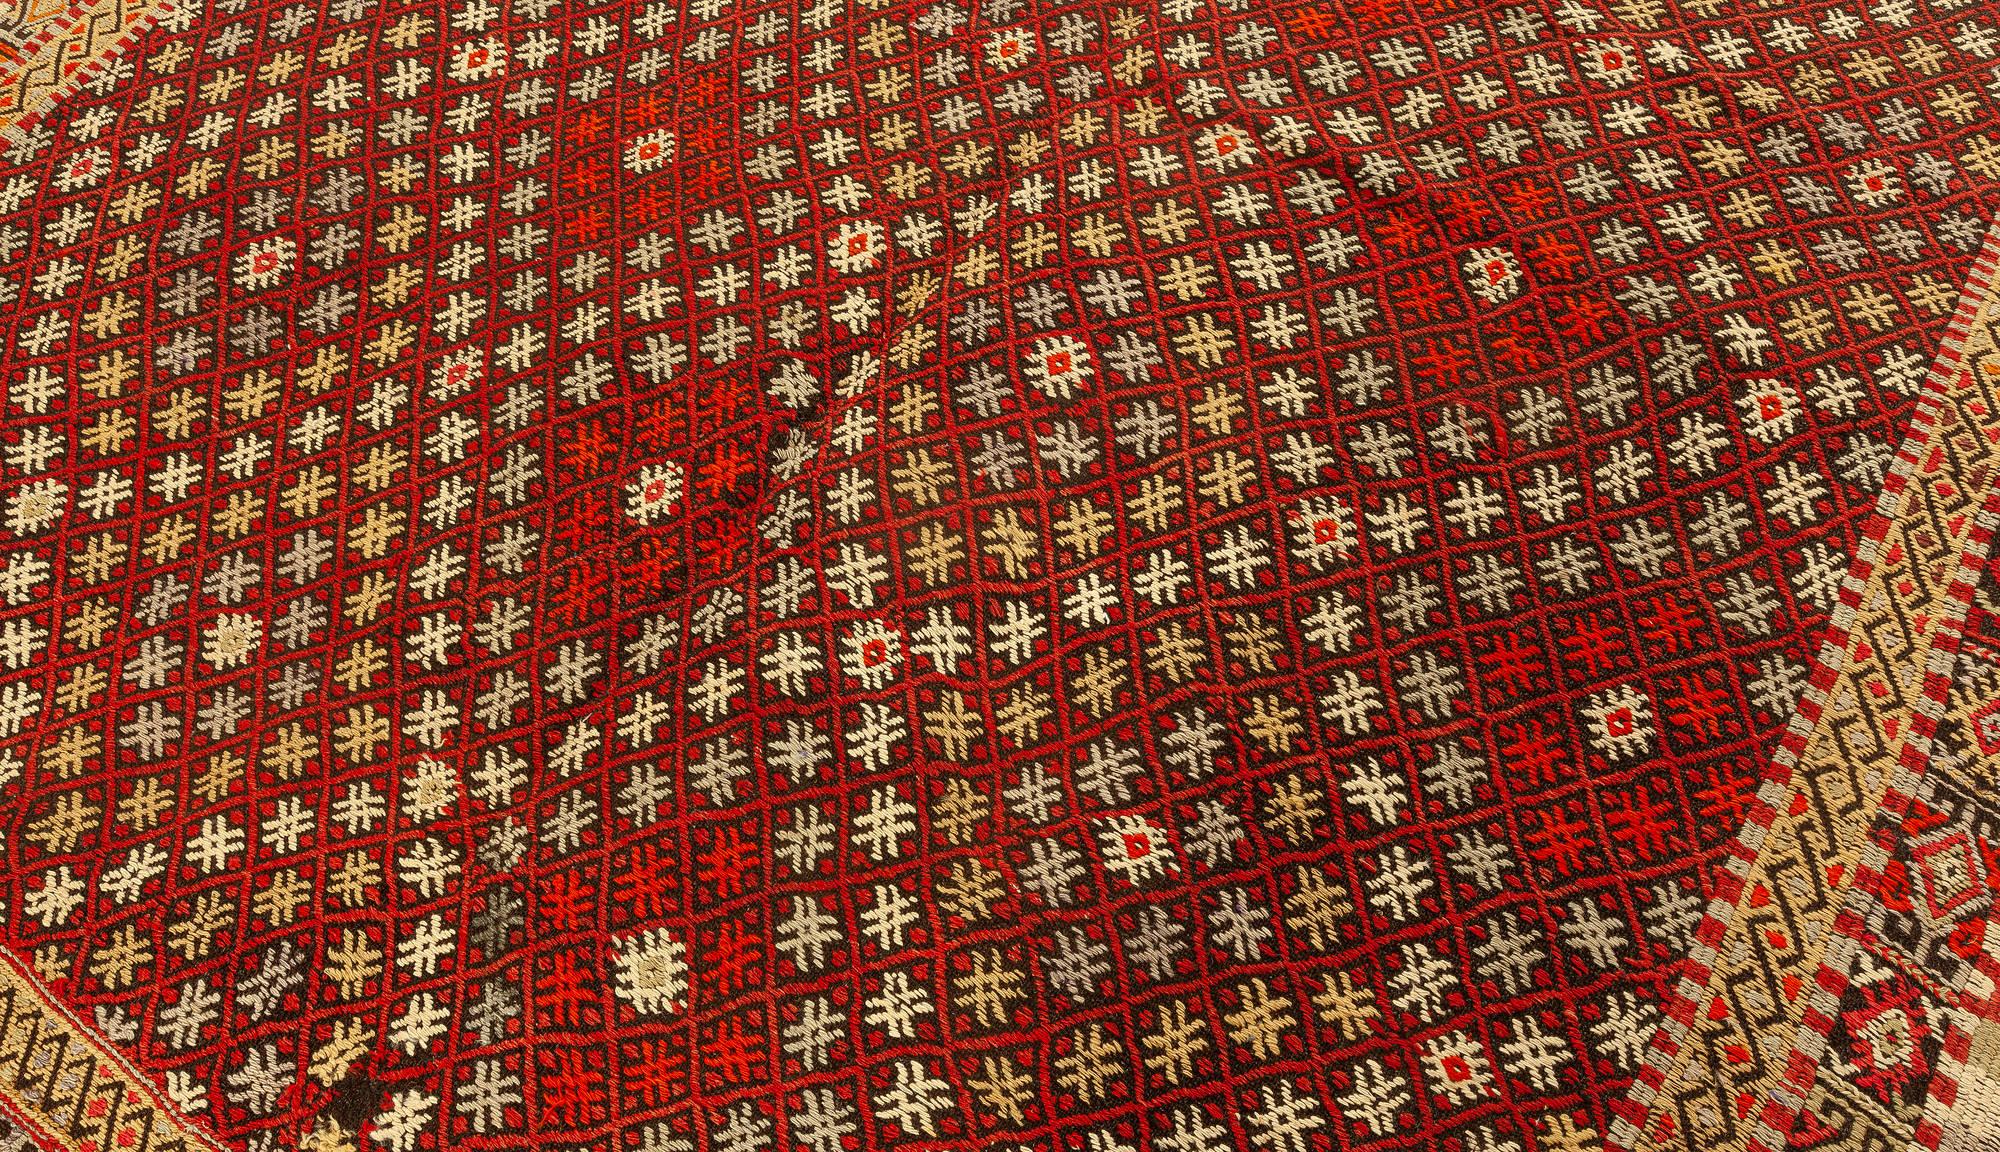 Mid-20th Century handmade vintage rag rug.
Size: 7'0